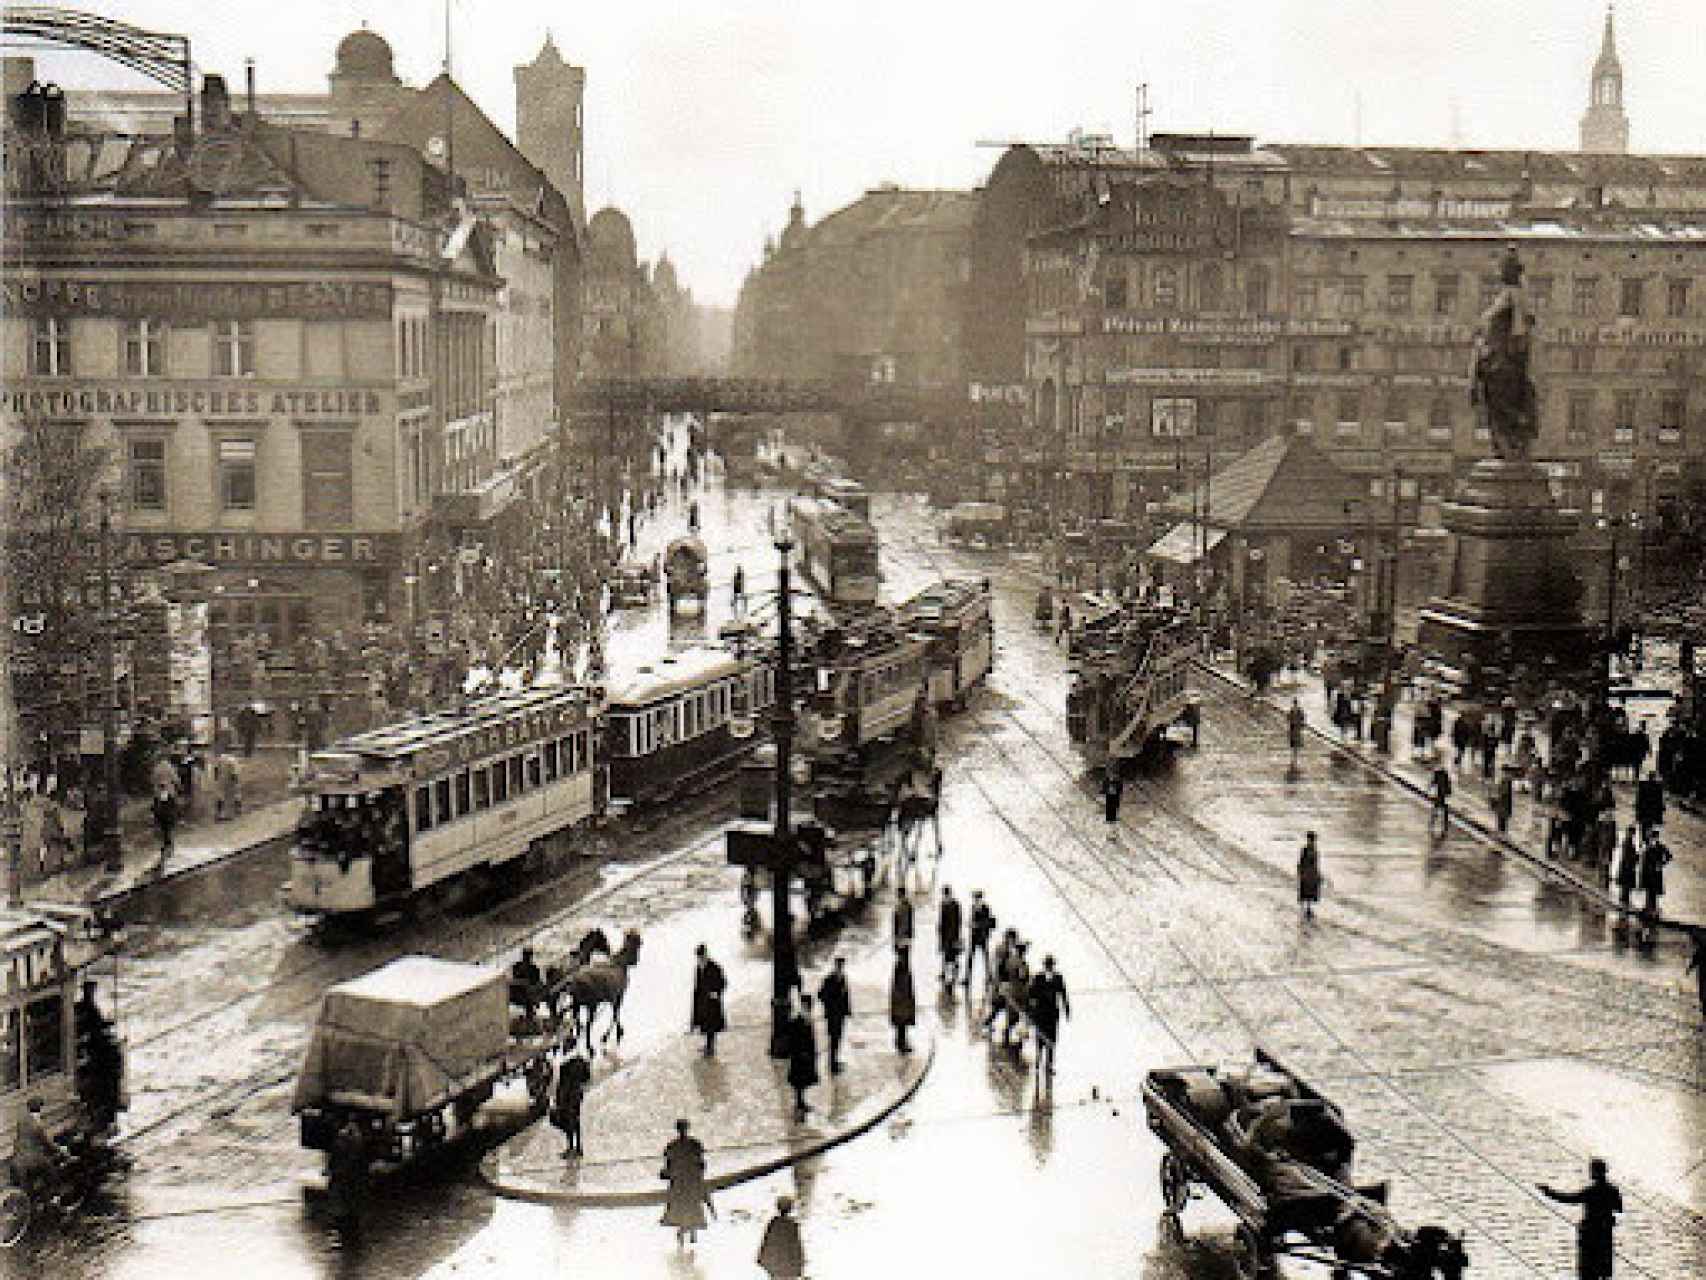 Alexander Platz (1920)